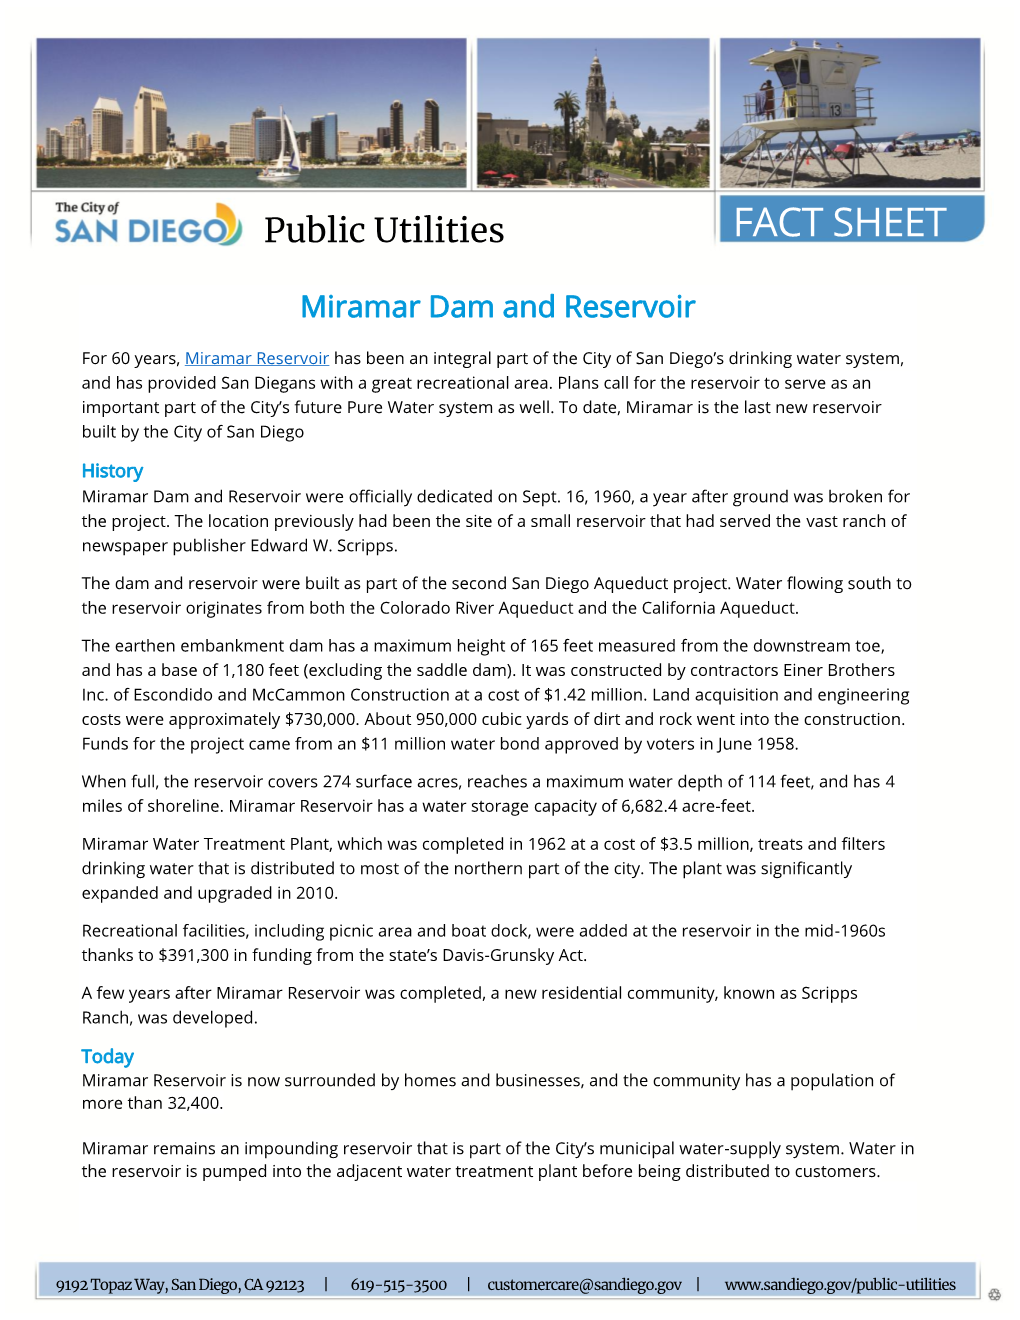 Miramar Reservoir Fact Sheet